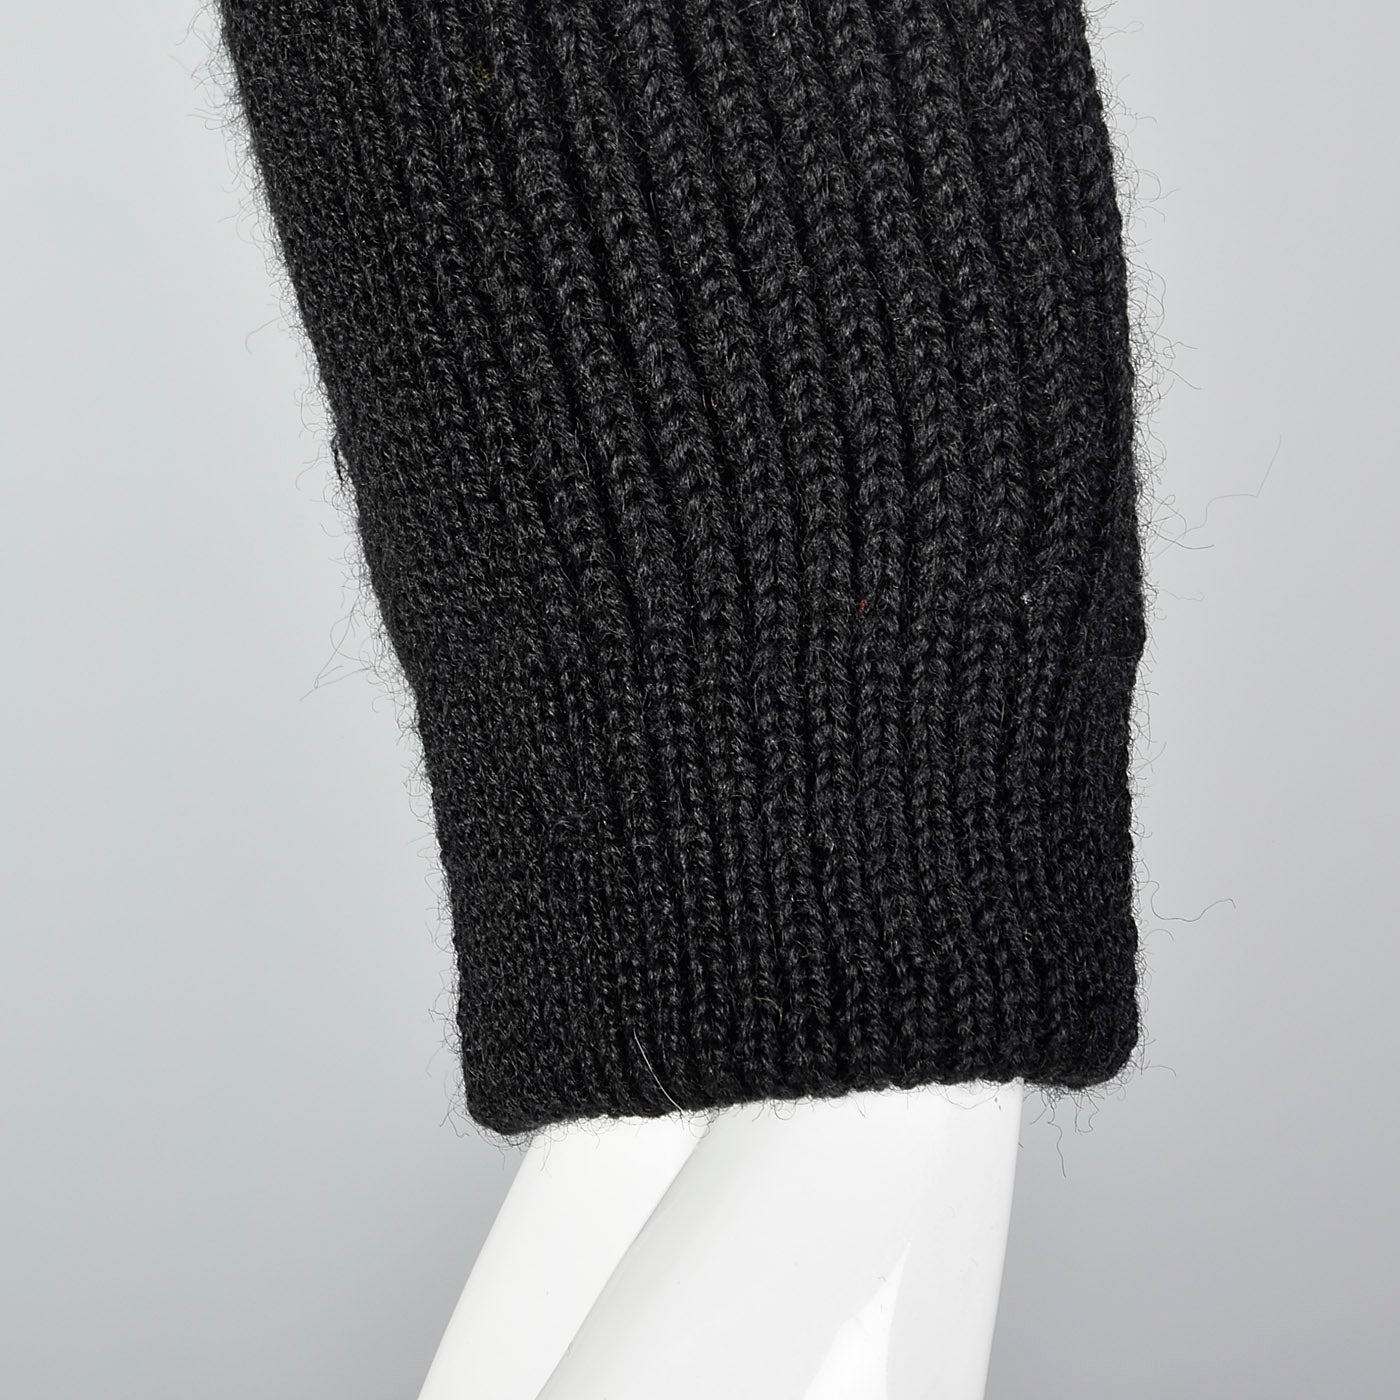 1950s Black Wool Ski Sweater with Wind Collar